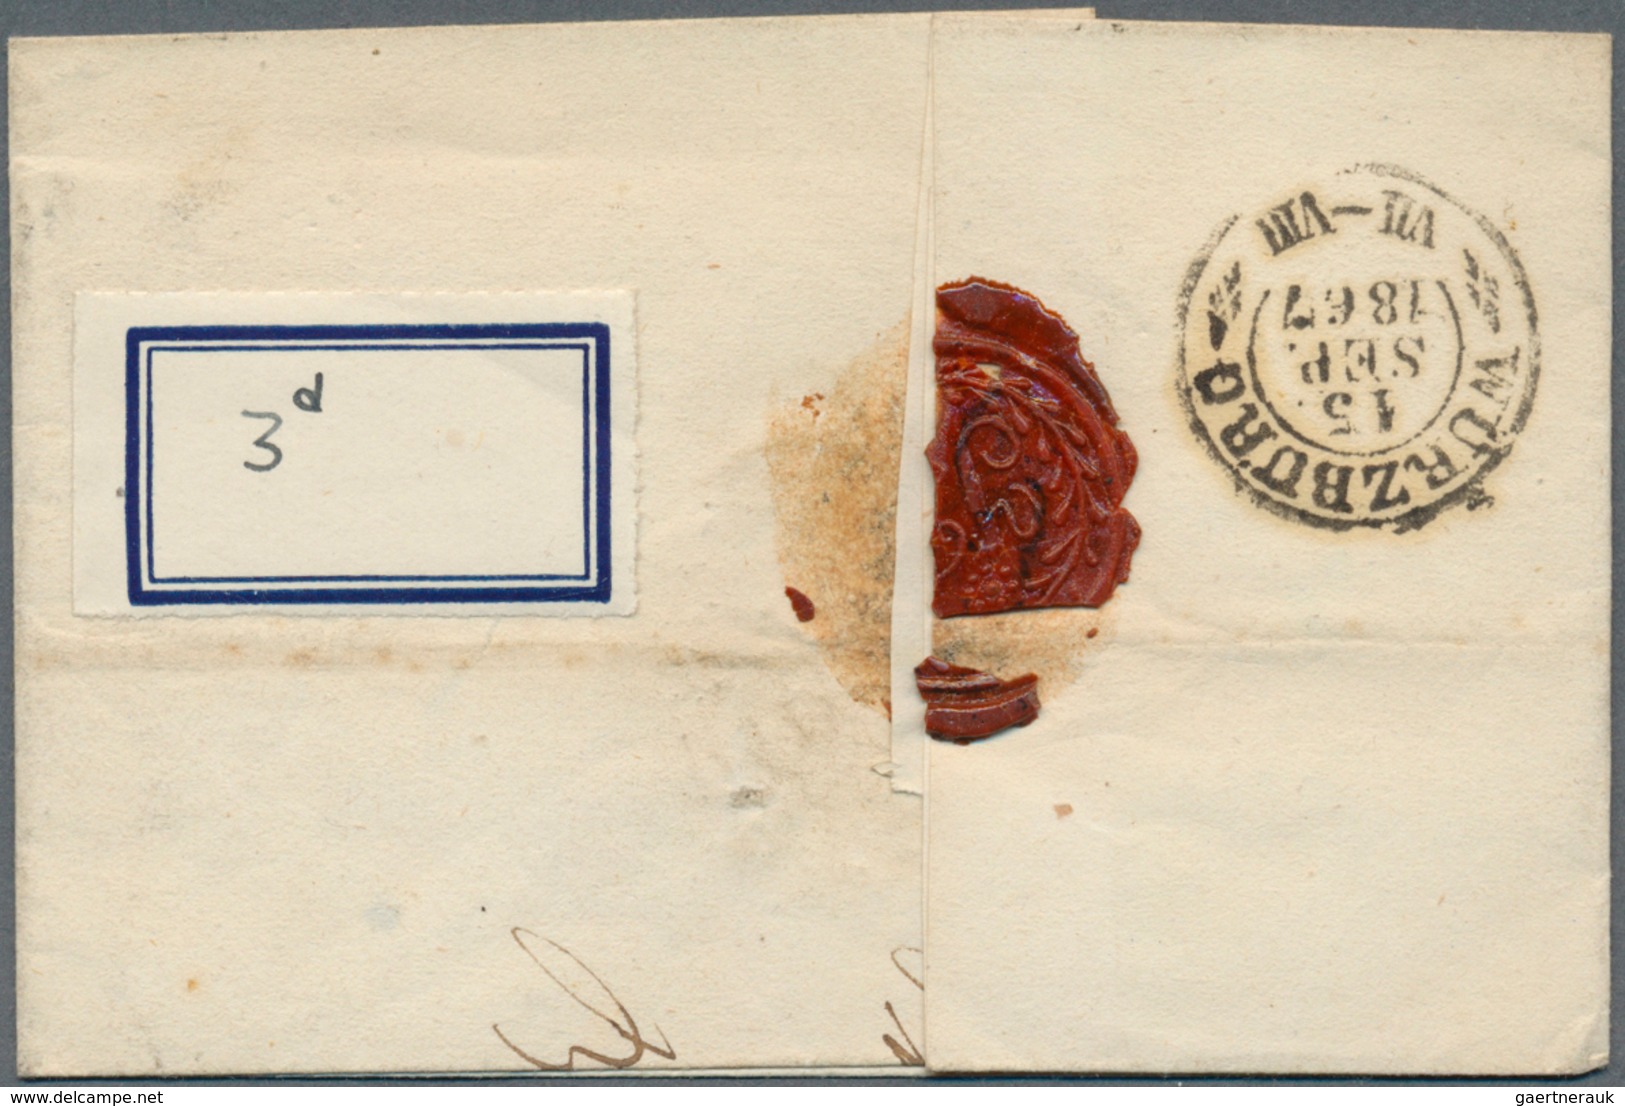 Bayern - Postablagestempel: "Burgreppach POSTABLAGE " L2 auf Brief mit 3 Kr. rot (berührt) + drei we